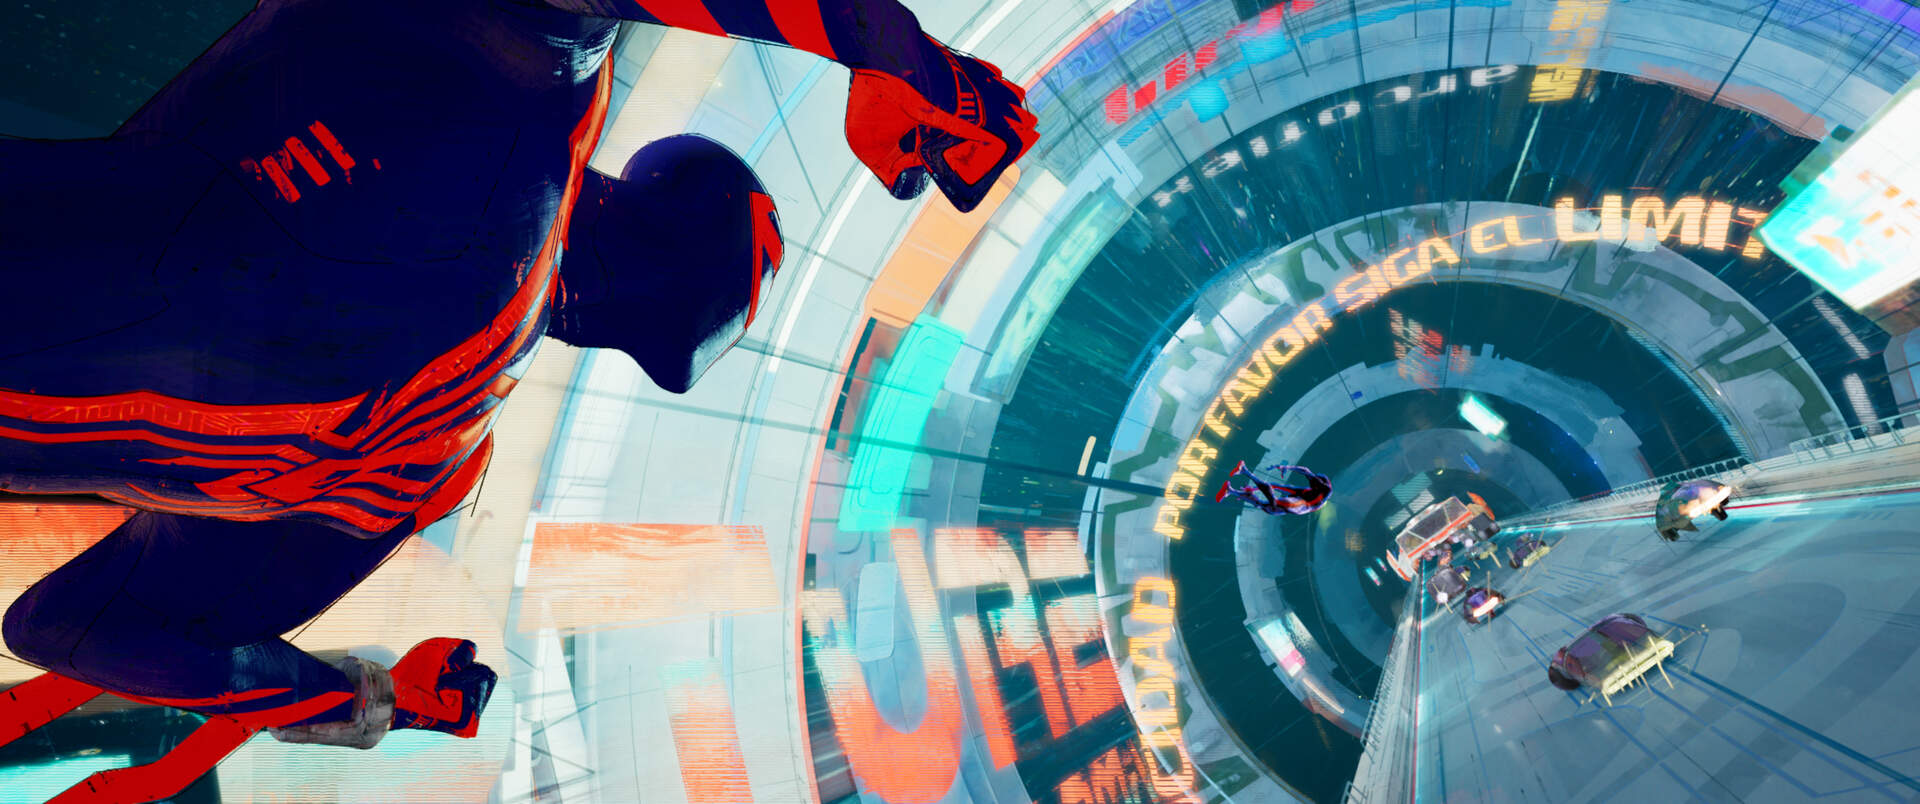 Spider-Man: Across the Spider-Verse - Szenenbild 18 von 20